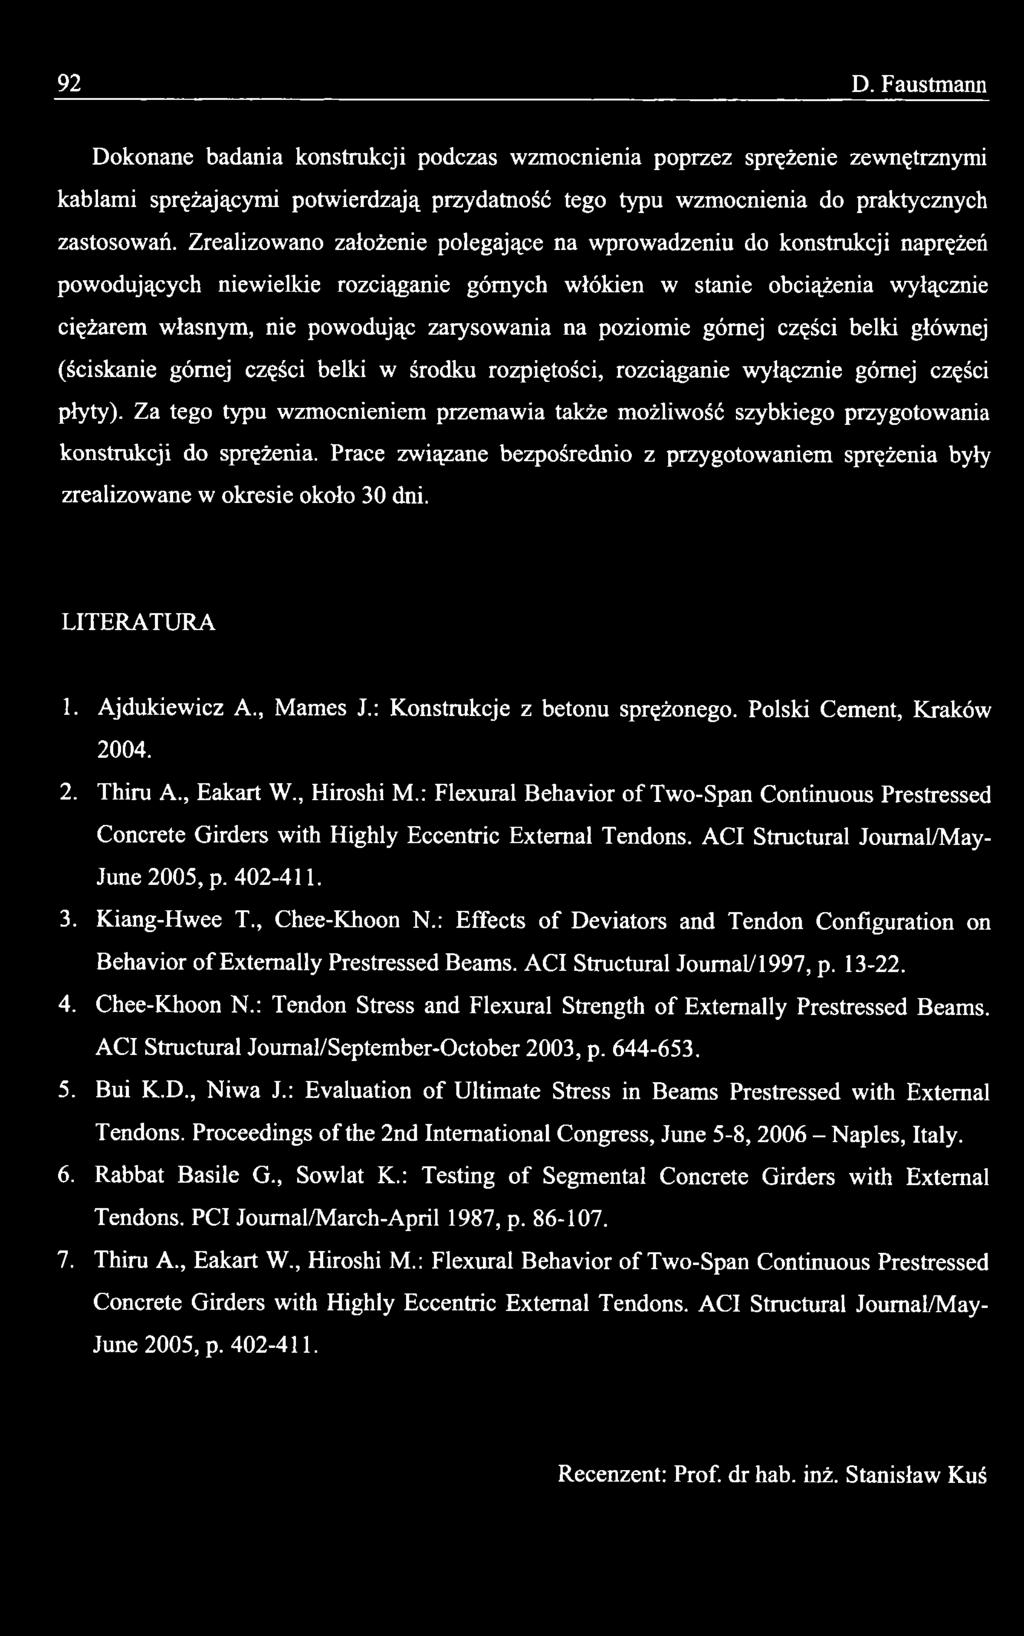 LITERATURA 1. Ajdukiewicz A., Mames J.: Konstrukcje z betonu sprężonego. Polski Cement, Kraków 2004. 2. Thiru A., Eakart W., Hiroshi M.